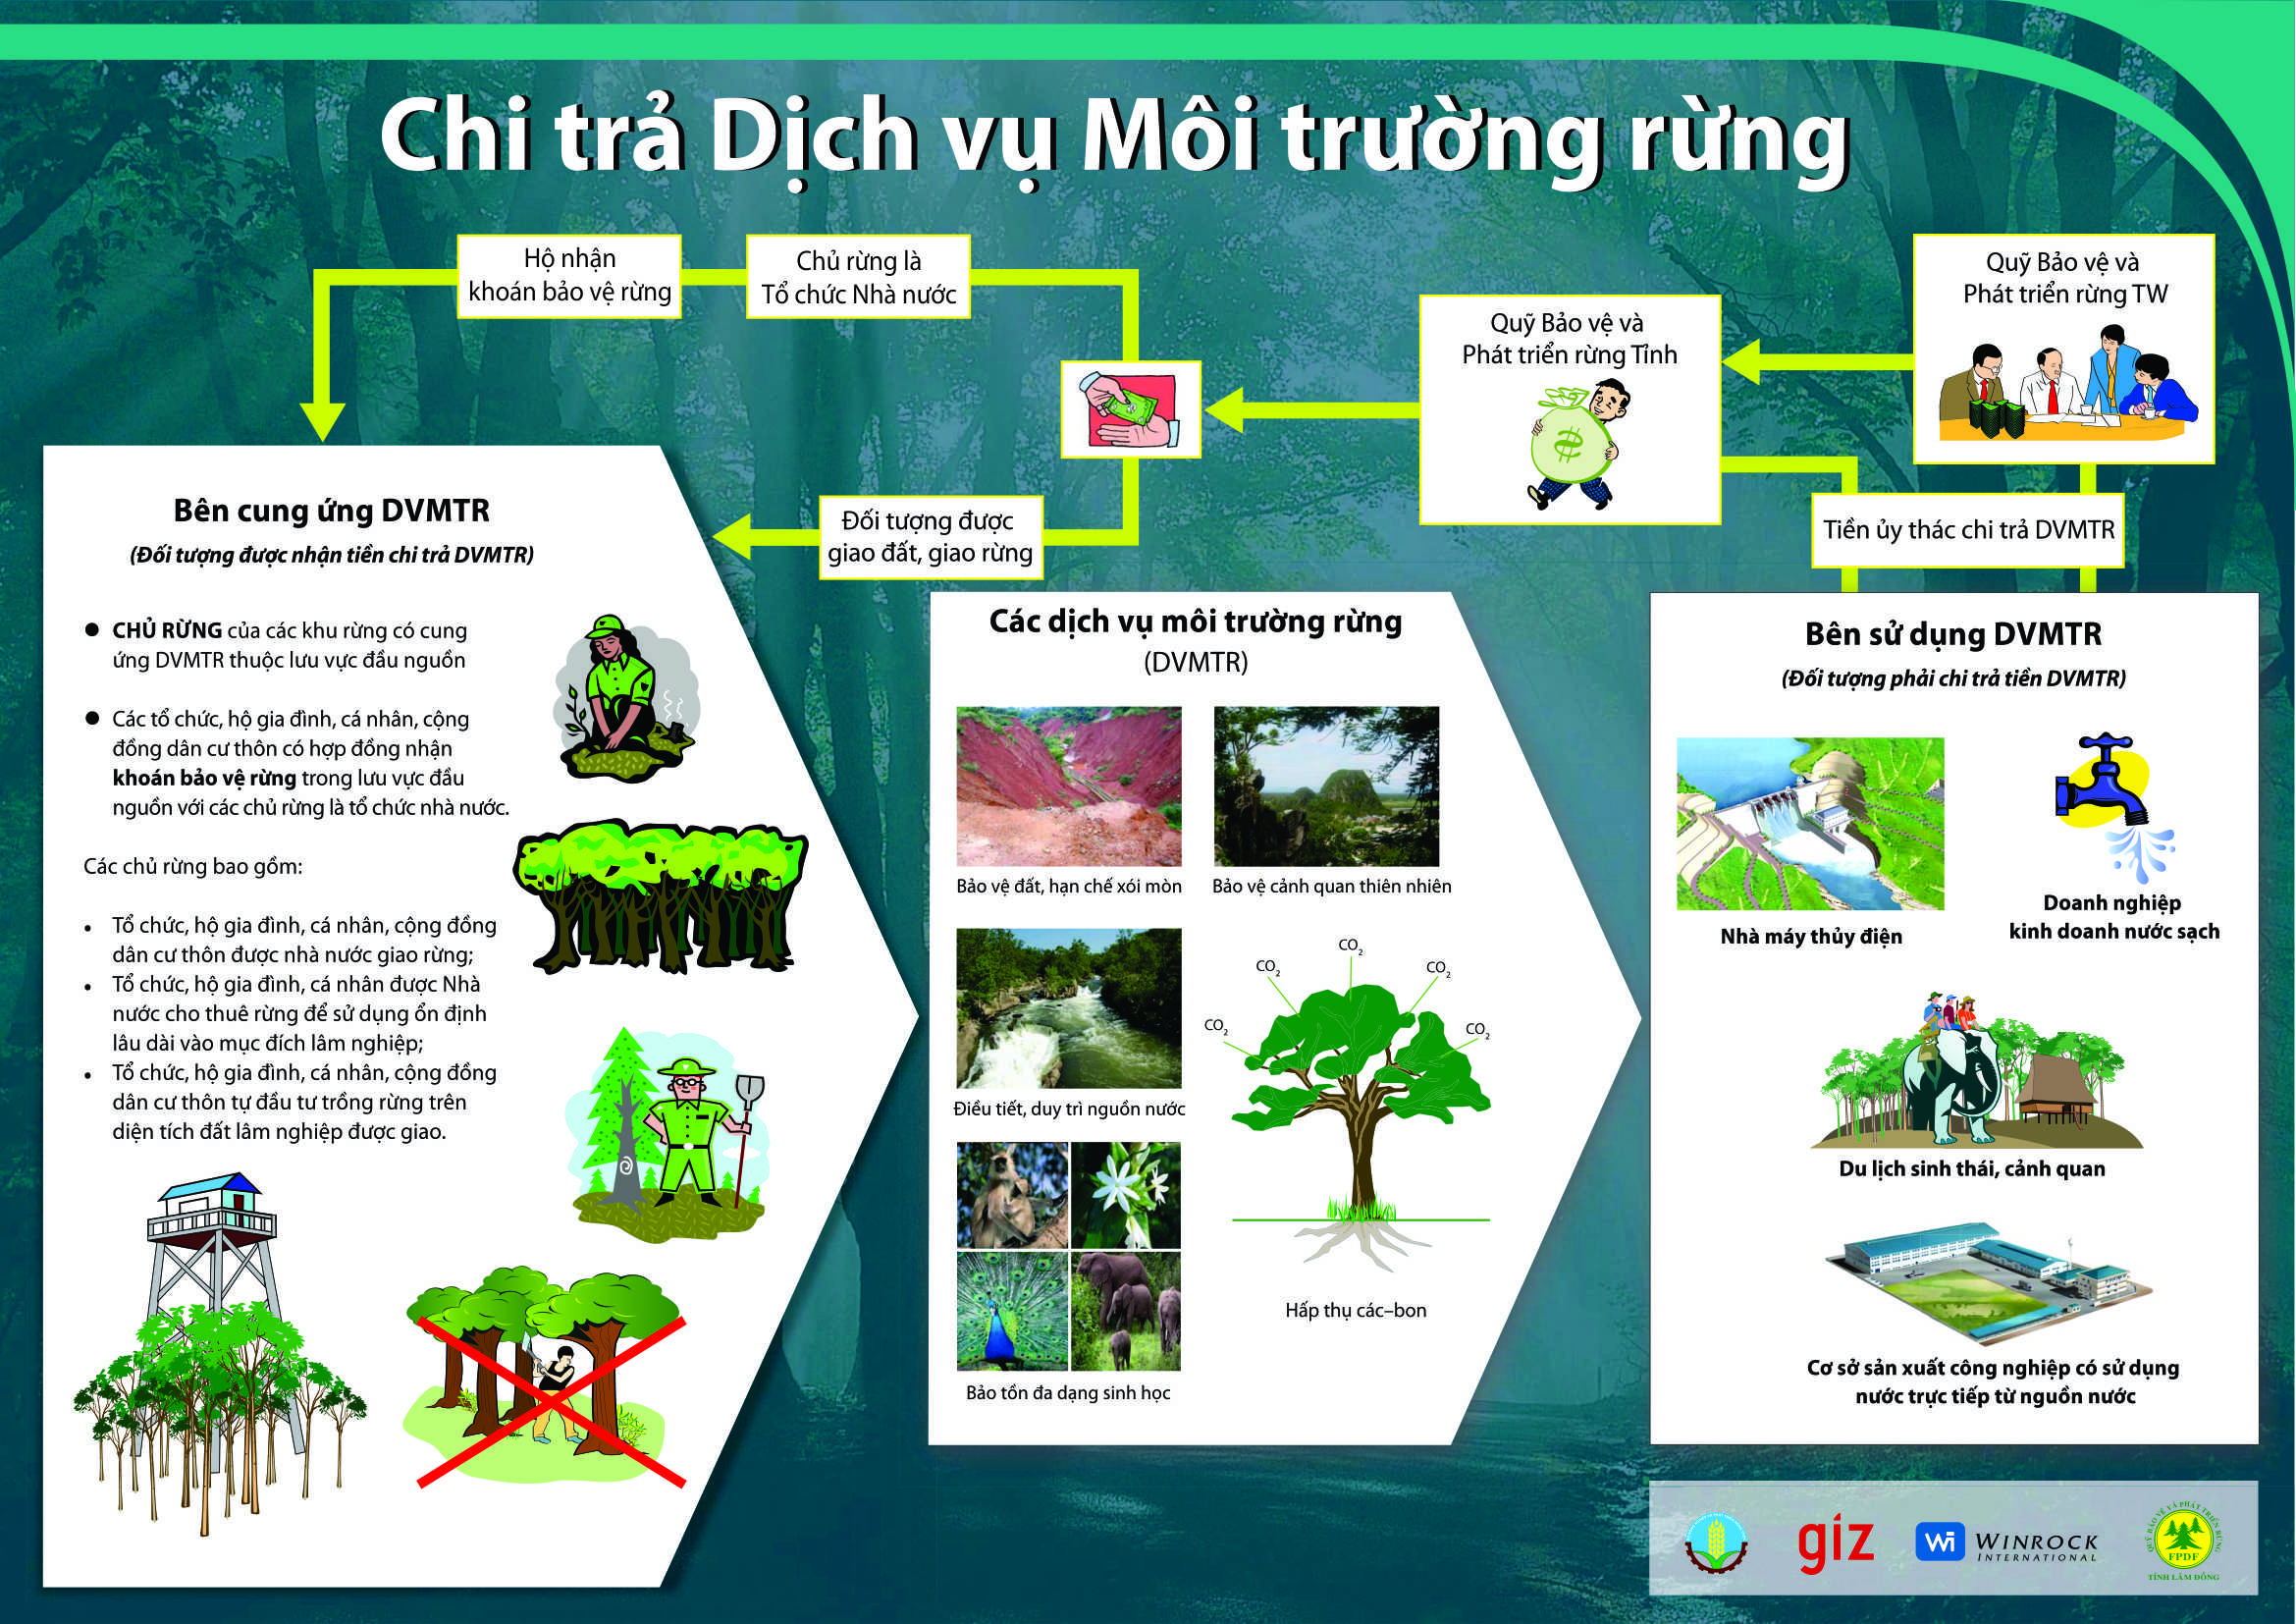 Quy trình Chi trả dịch vụ môi trường rừng tại tỉnh Nghệ An